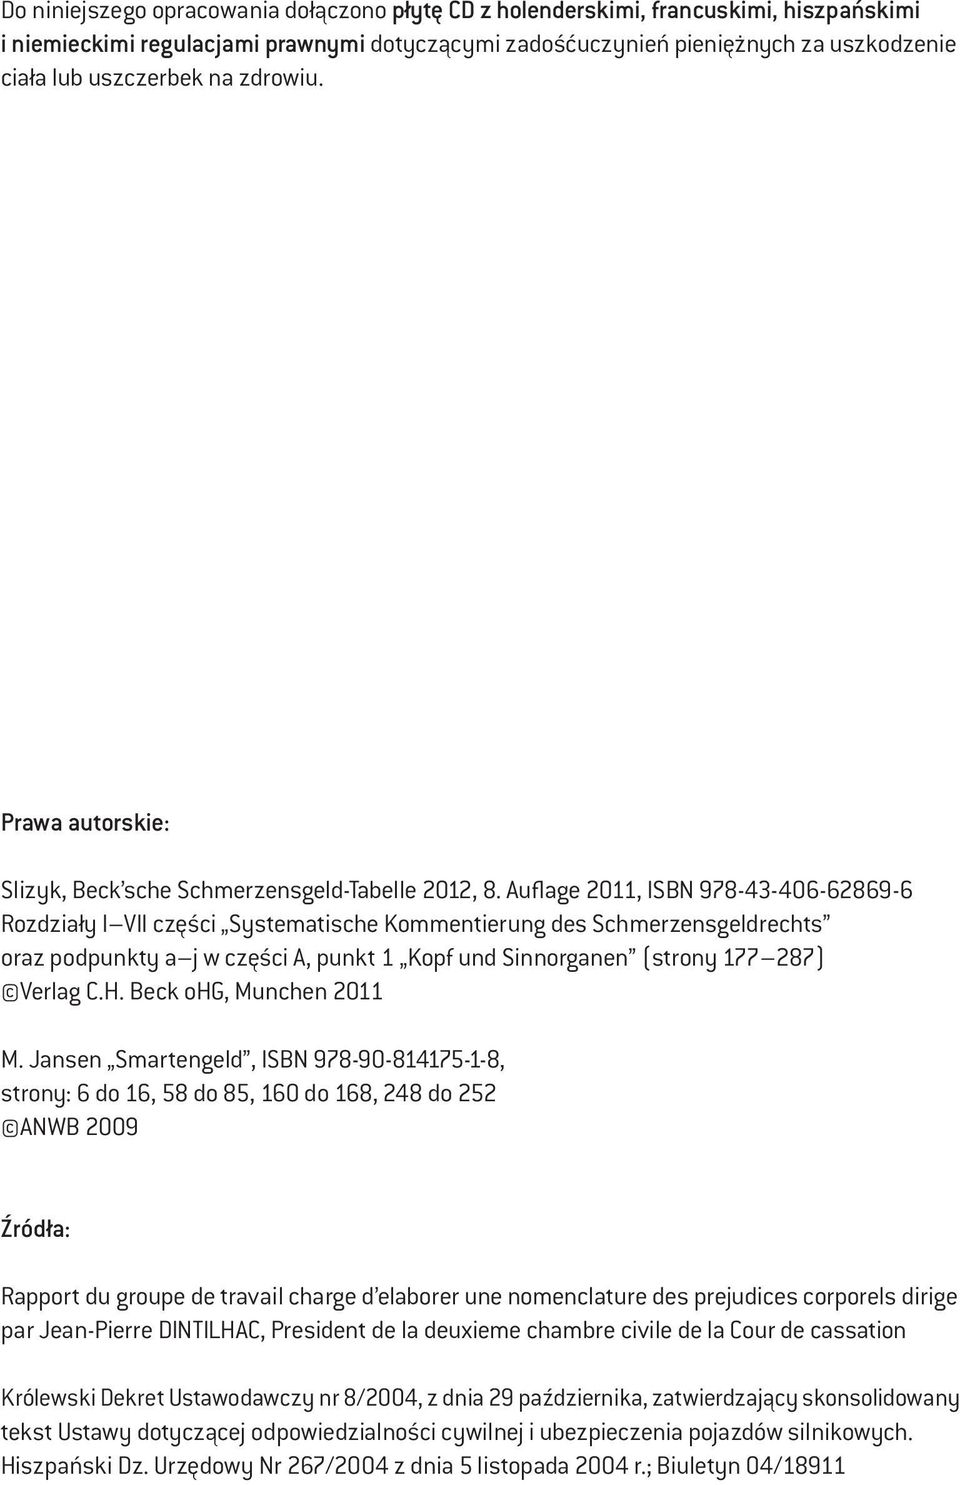 Auflage 2011, ISBN 978-43-406-62869-6 Rozdziały I VII części Systematische Kommentierung des Schmerzensgeldrechts oraz podpunkty a j w części A, punkt 1 Kopf und Sinnorganen (strony 177 287) Verlag C.